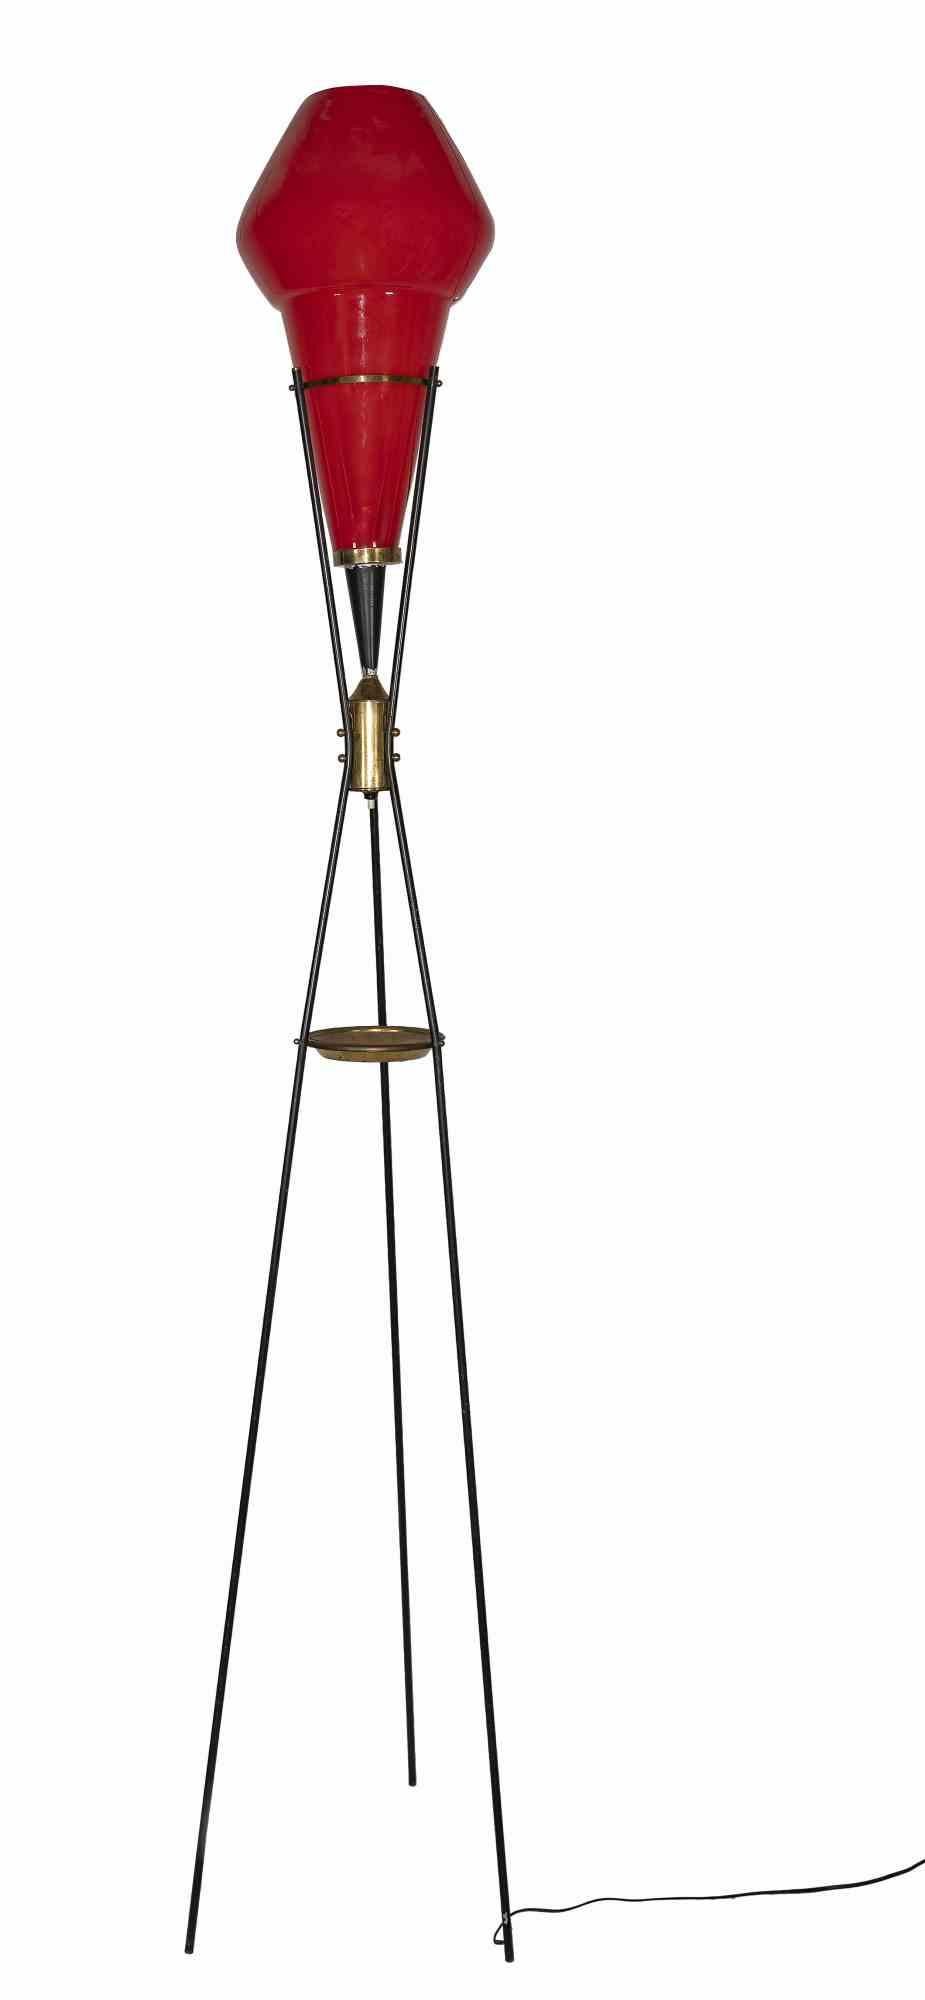 Le lampadaire rouge est une lampe de conception originale réalisée dans les années 1960 et attribuée à Vistosi.

Abat-jour en verre rouge, base en métal, laiton et marbre de forme ronde. Porte un cendrier en laiton sous l'abat-jour.

Etat neuf